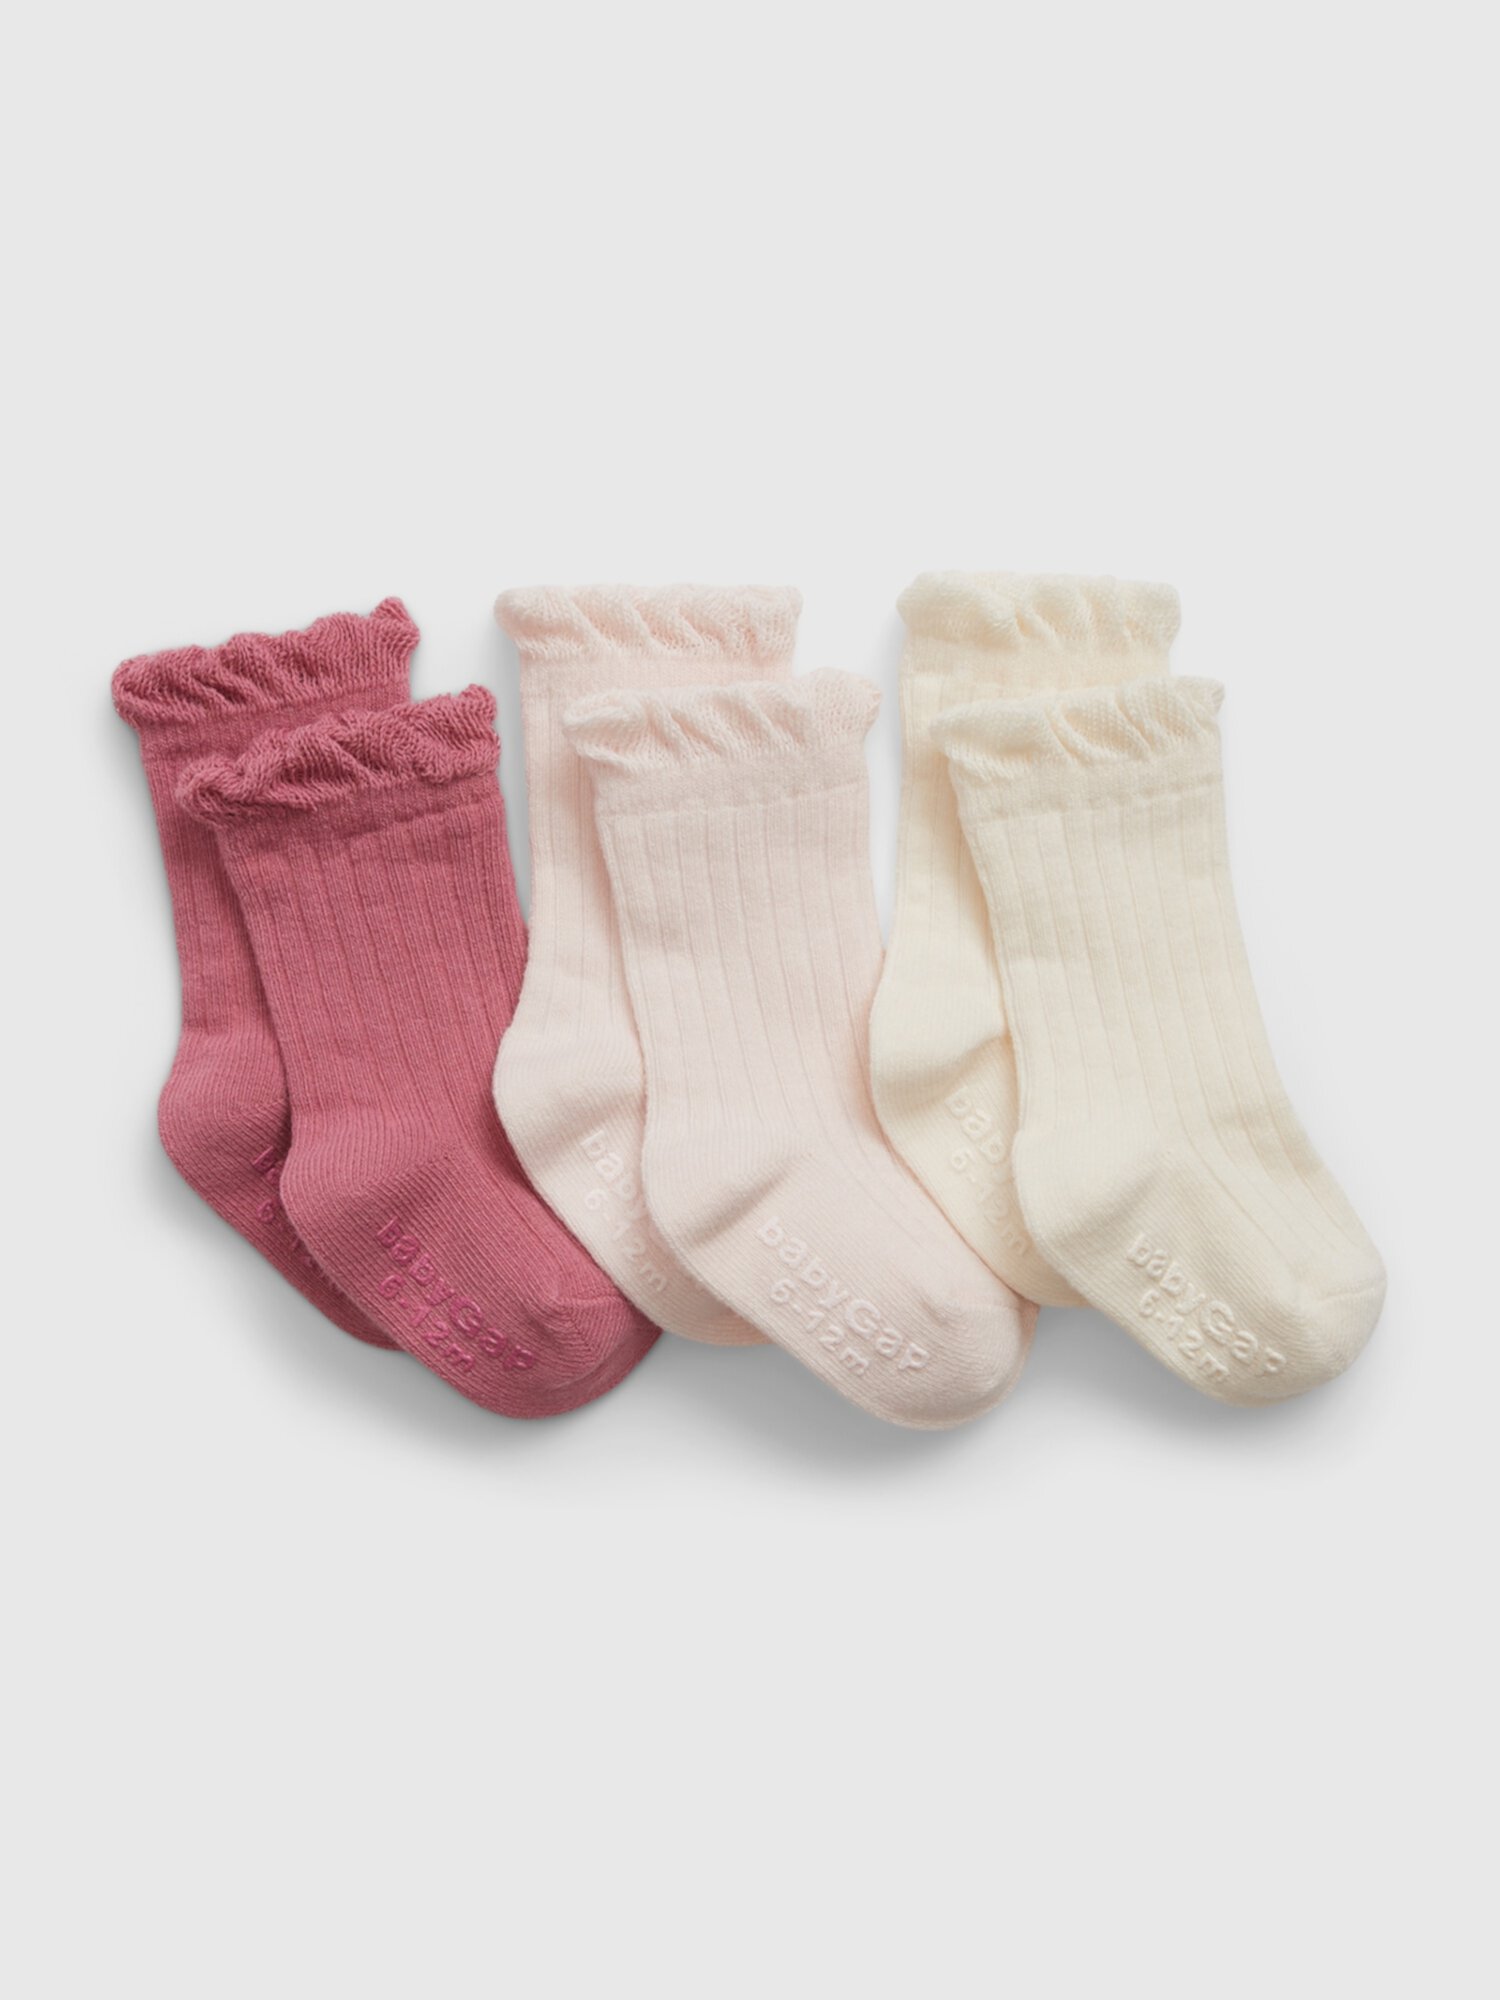 Детские носки (3 пары) Gap, Унисекс Gap